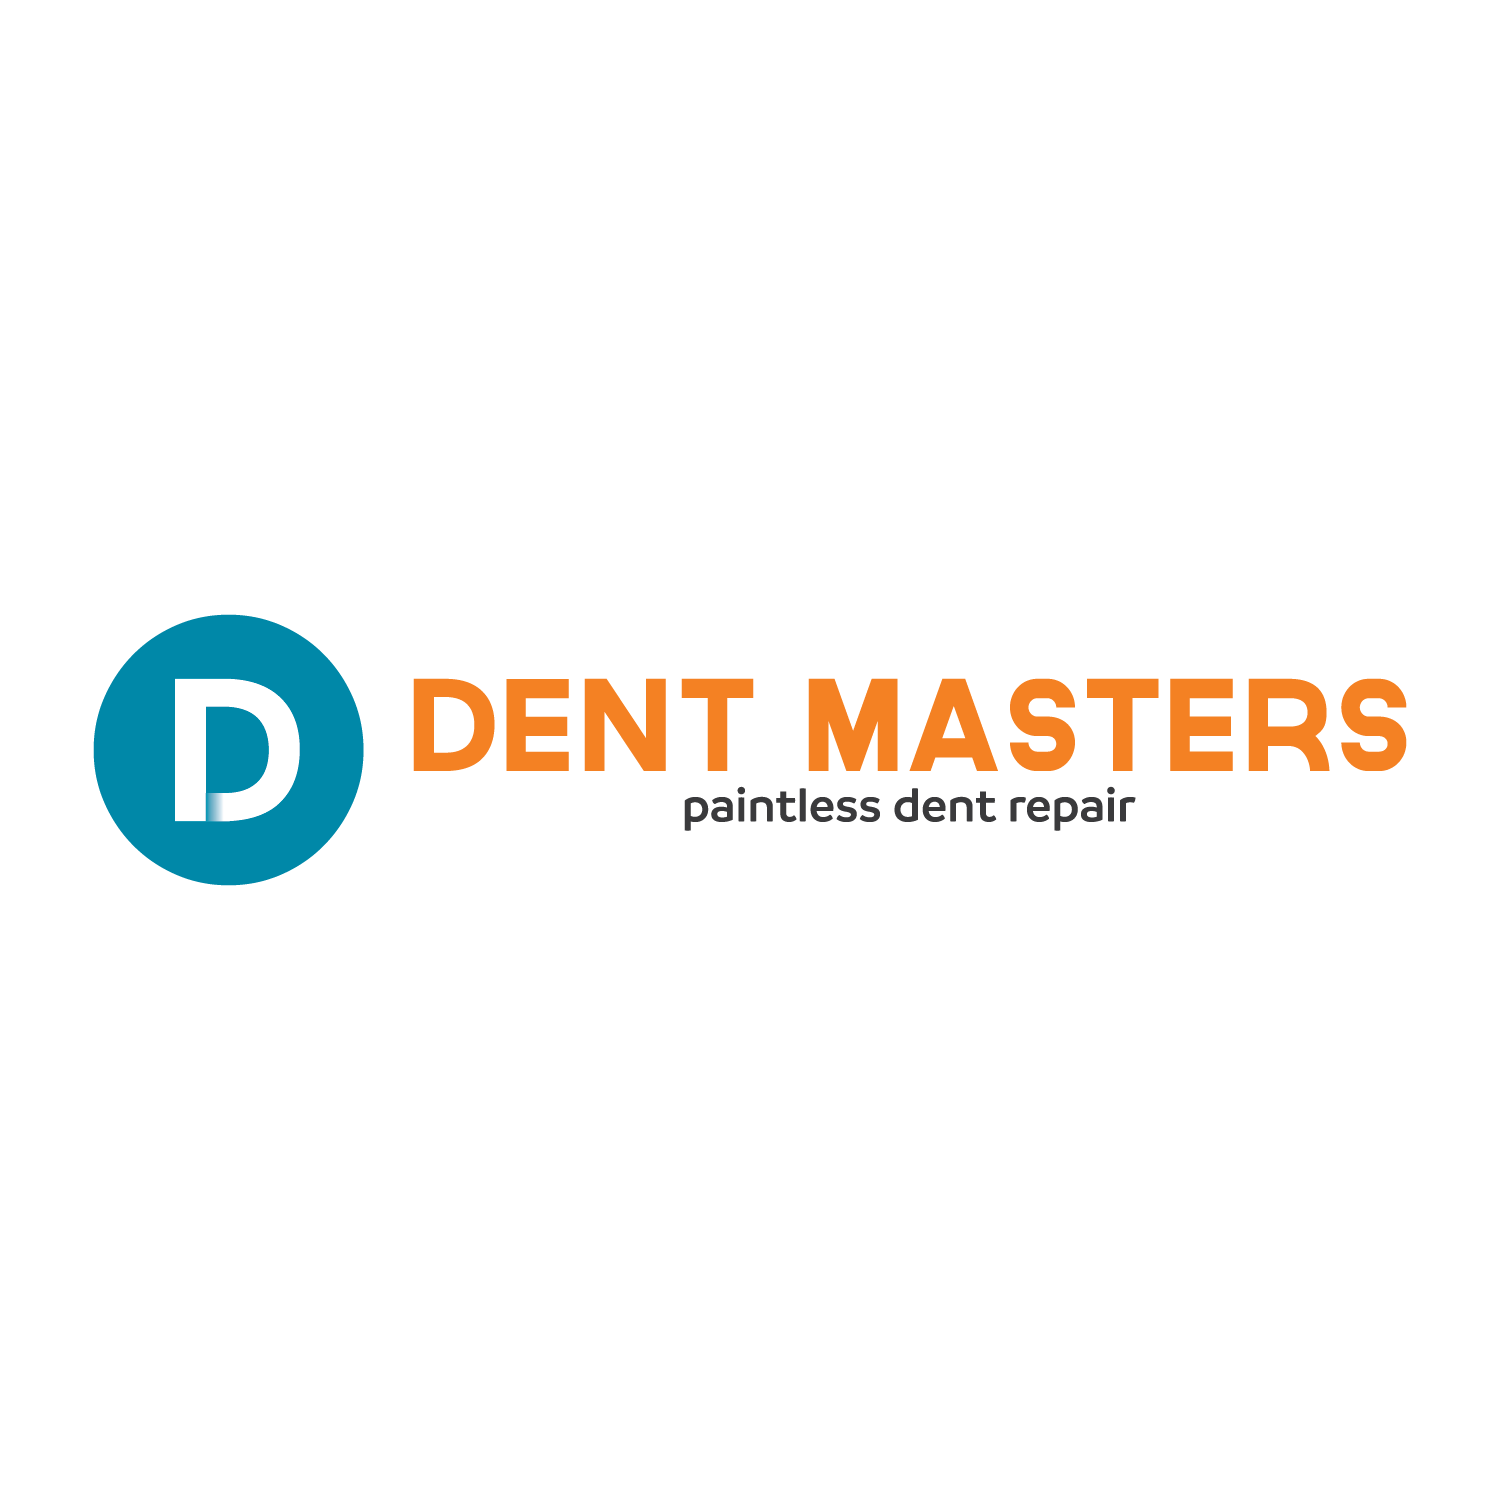 Dent Masters Paintless Dent Repair